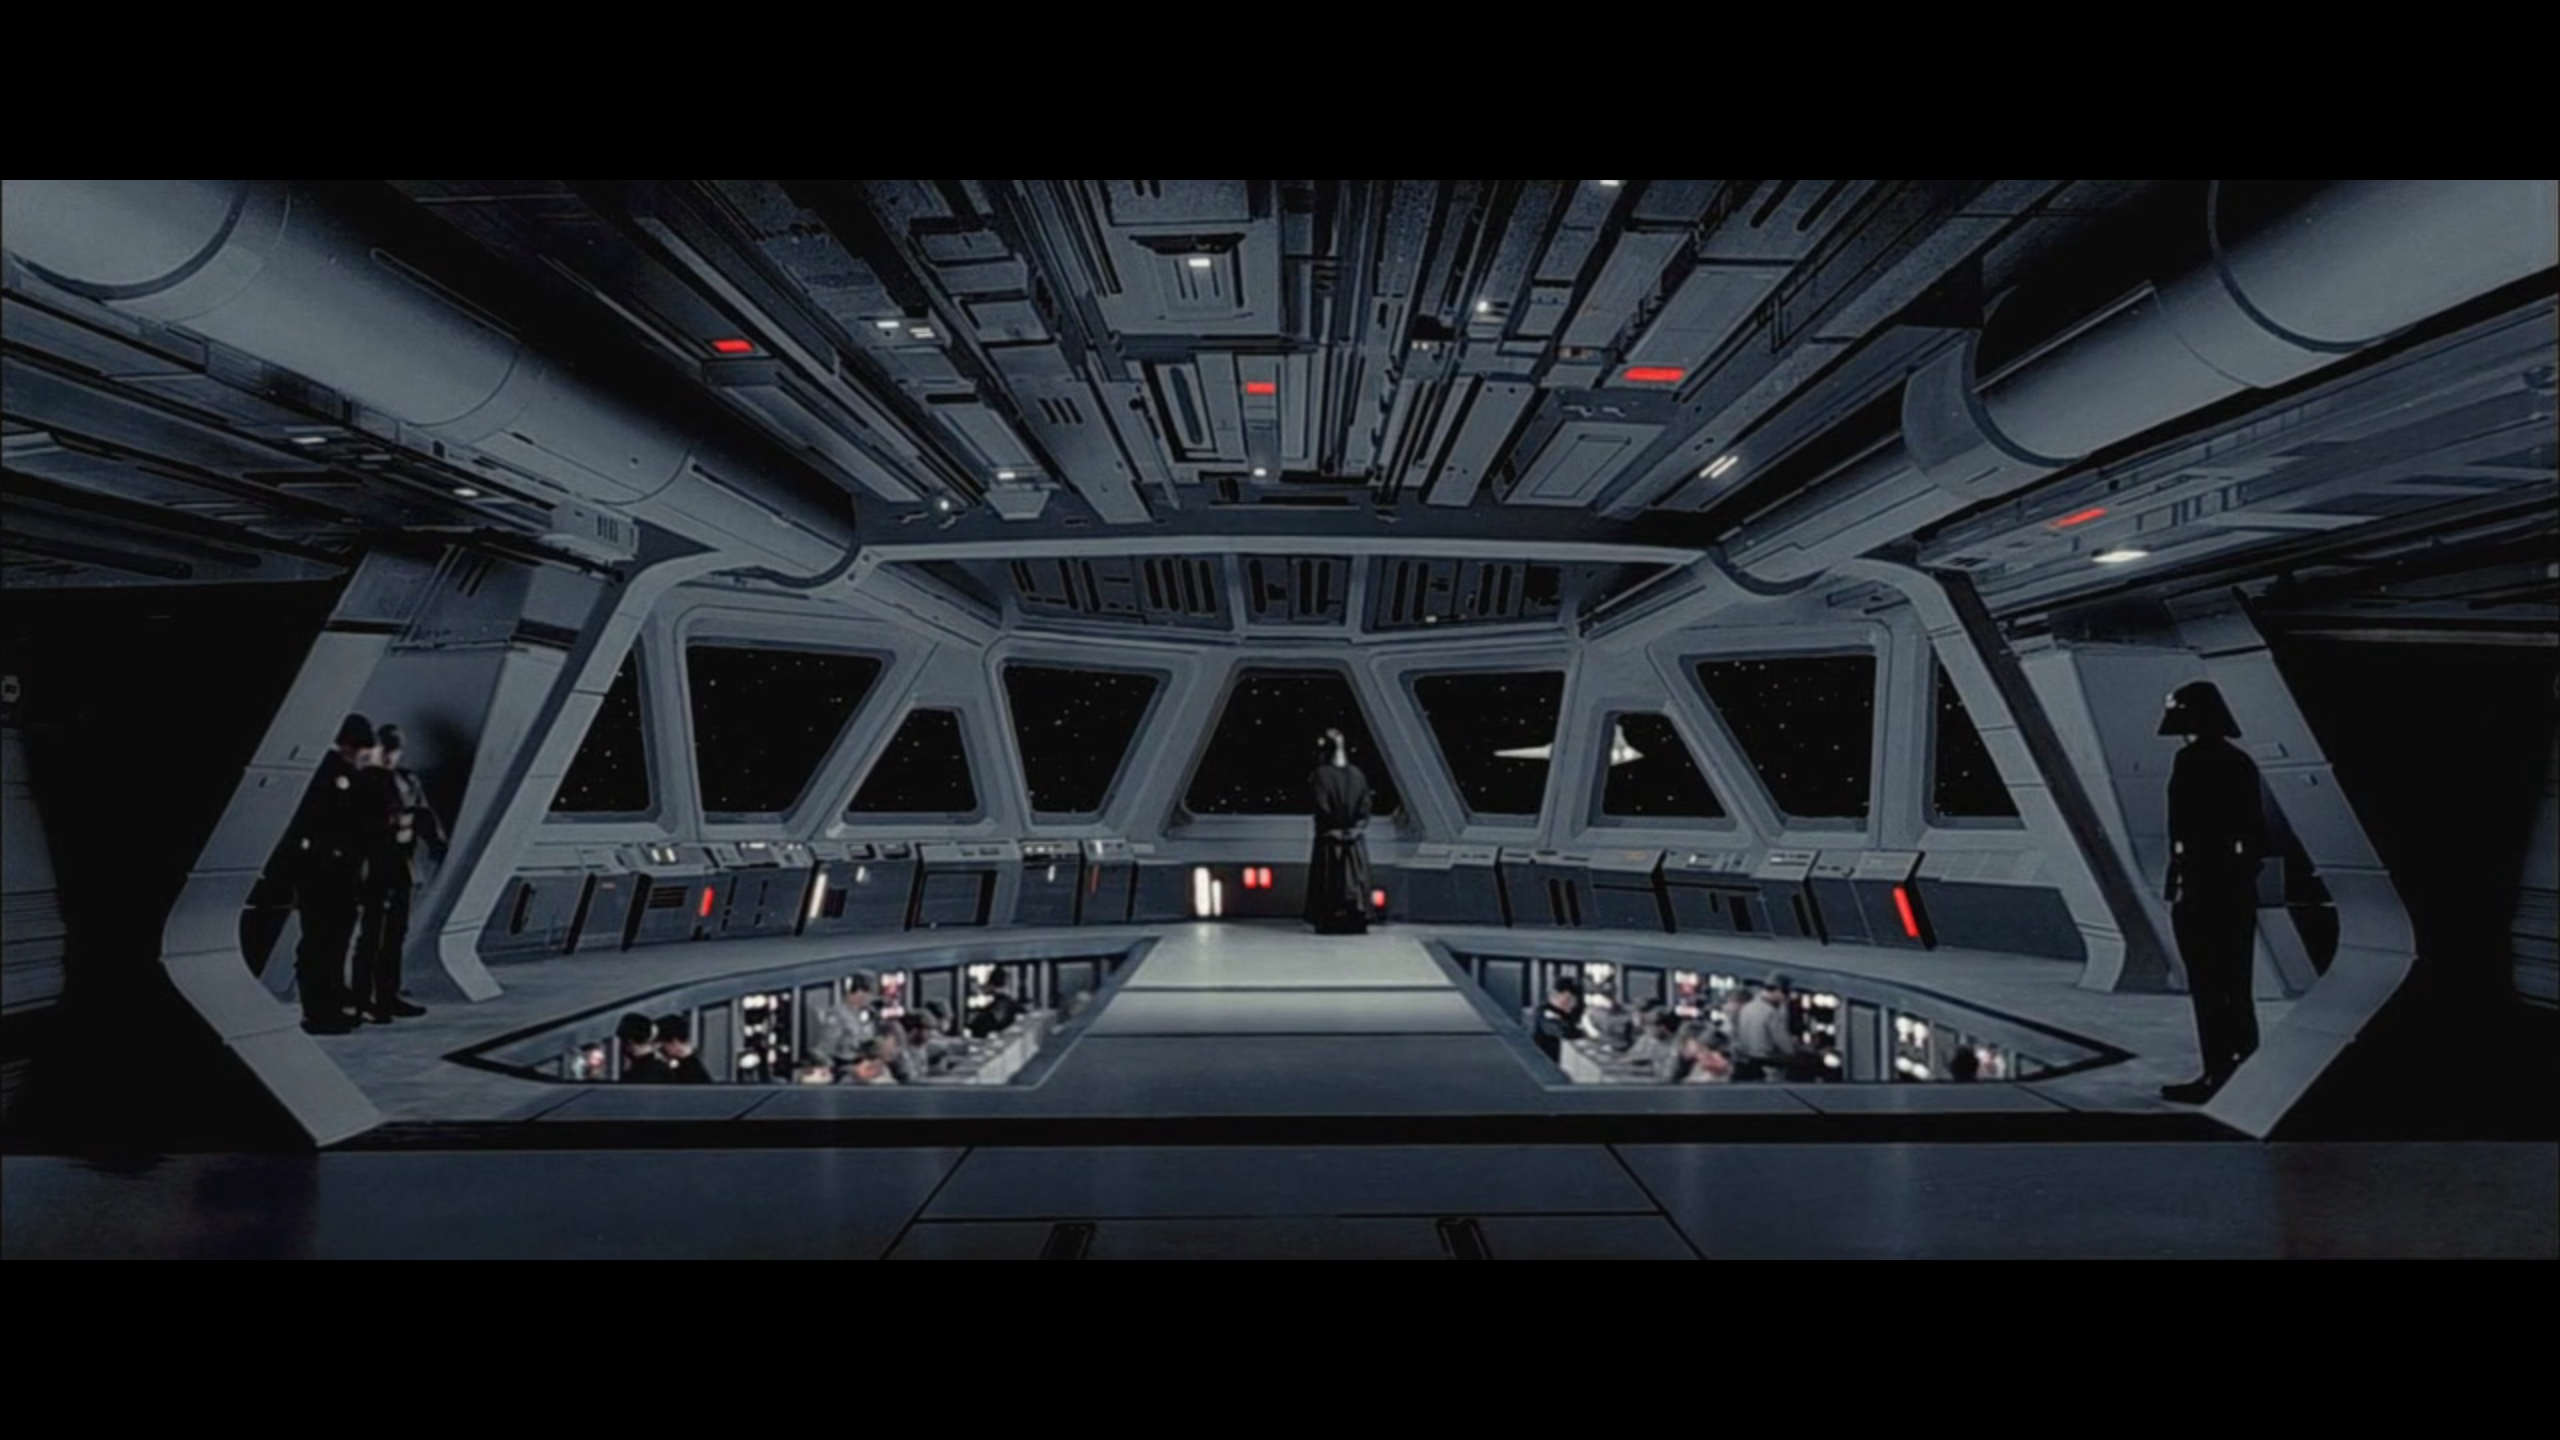 Super Star Destroyer Executor bridge interior (Star Wars) [2560 x 1440]